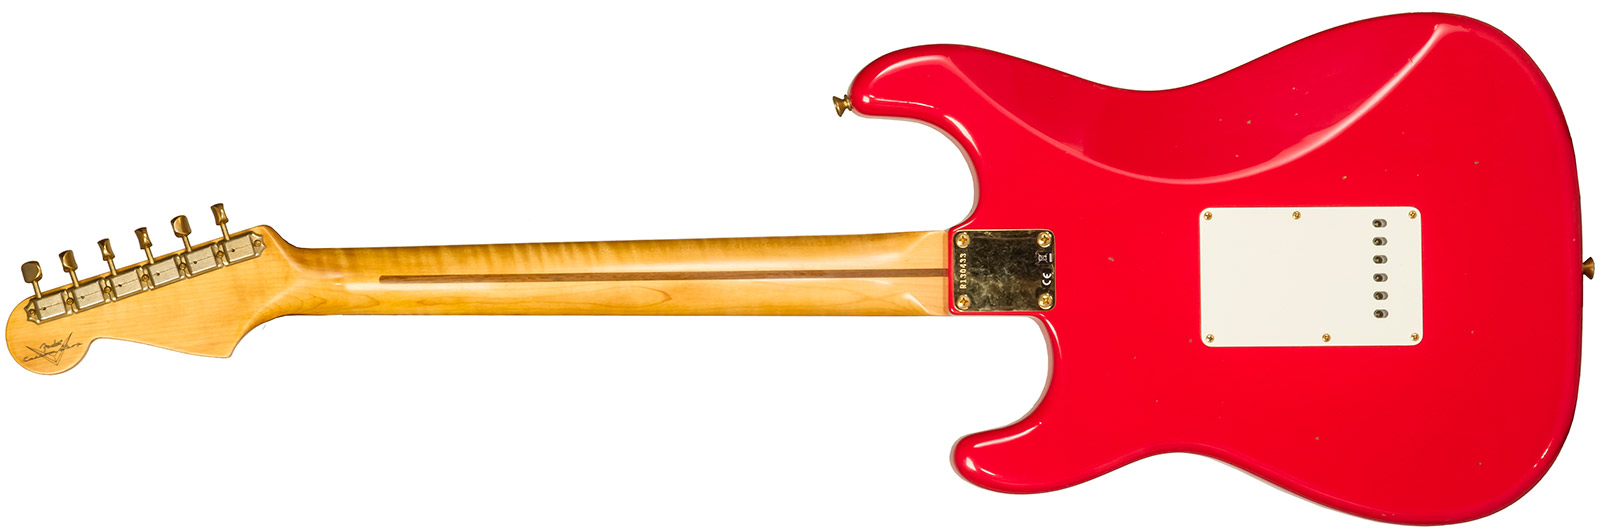 Fender Custom Shop Strat 1956 3s Trem Mn #r130433 - Journeyman Relic Fiesta Red - Elektrische gitaar in Str-vorm - Variation 1